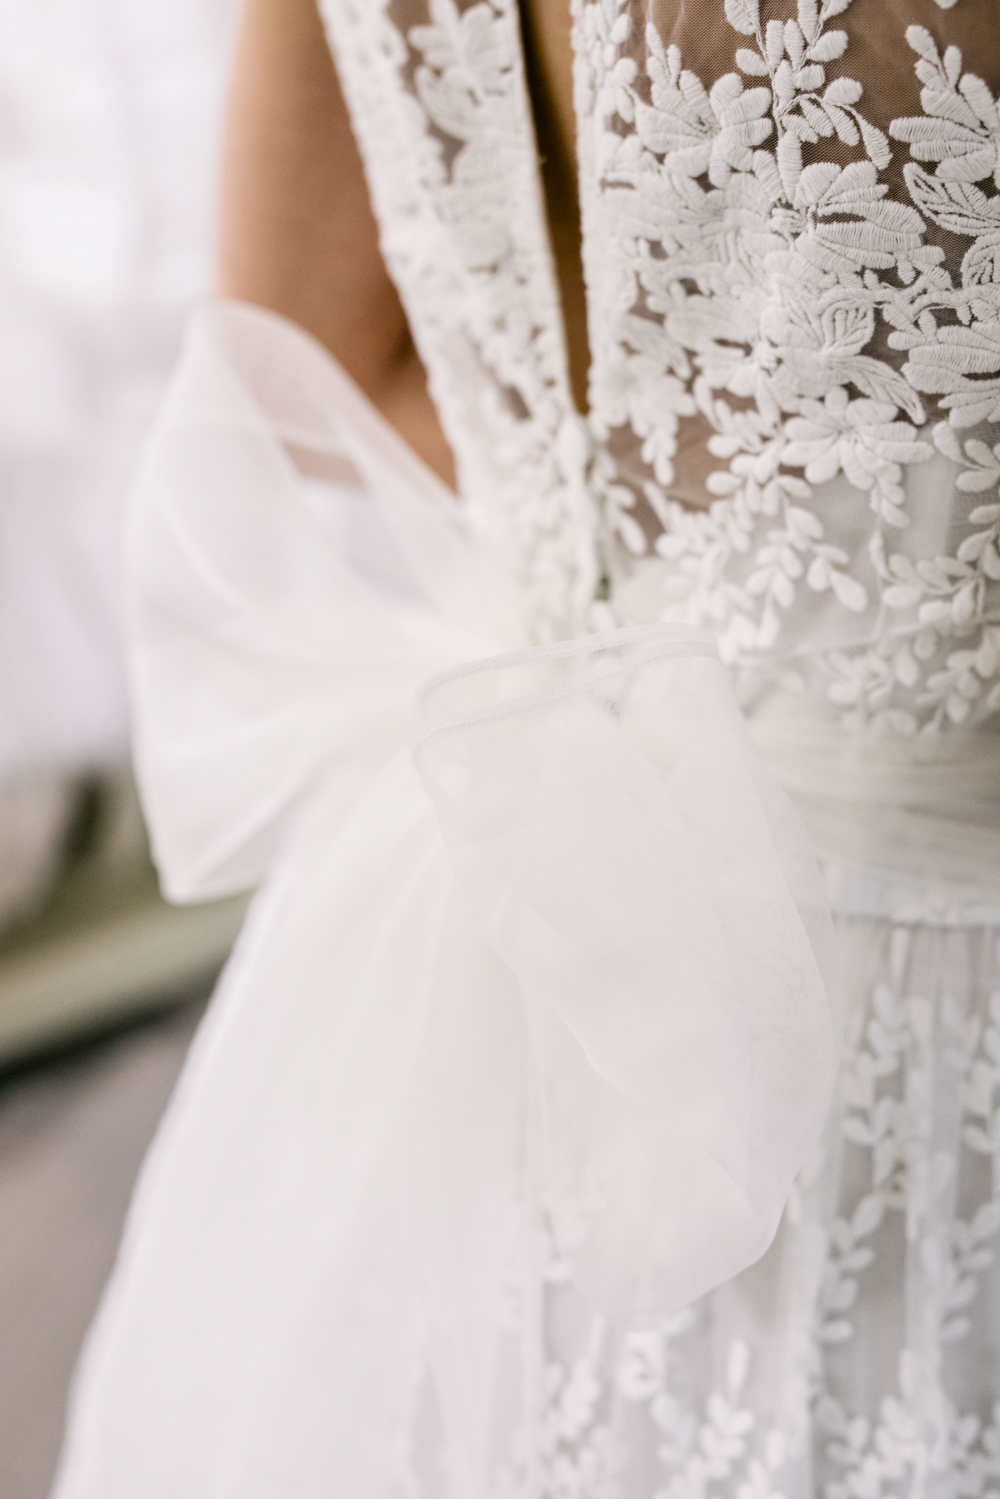 Утонченное и изящное свадебное платье Le sposi di Gio. Этот прекрасный итальянский бренд представлен только в бутике Wonderwhite